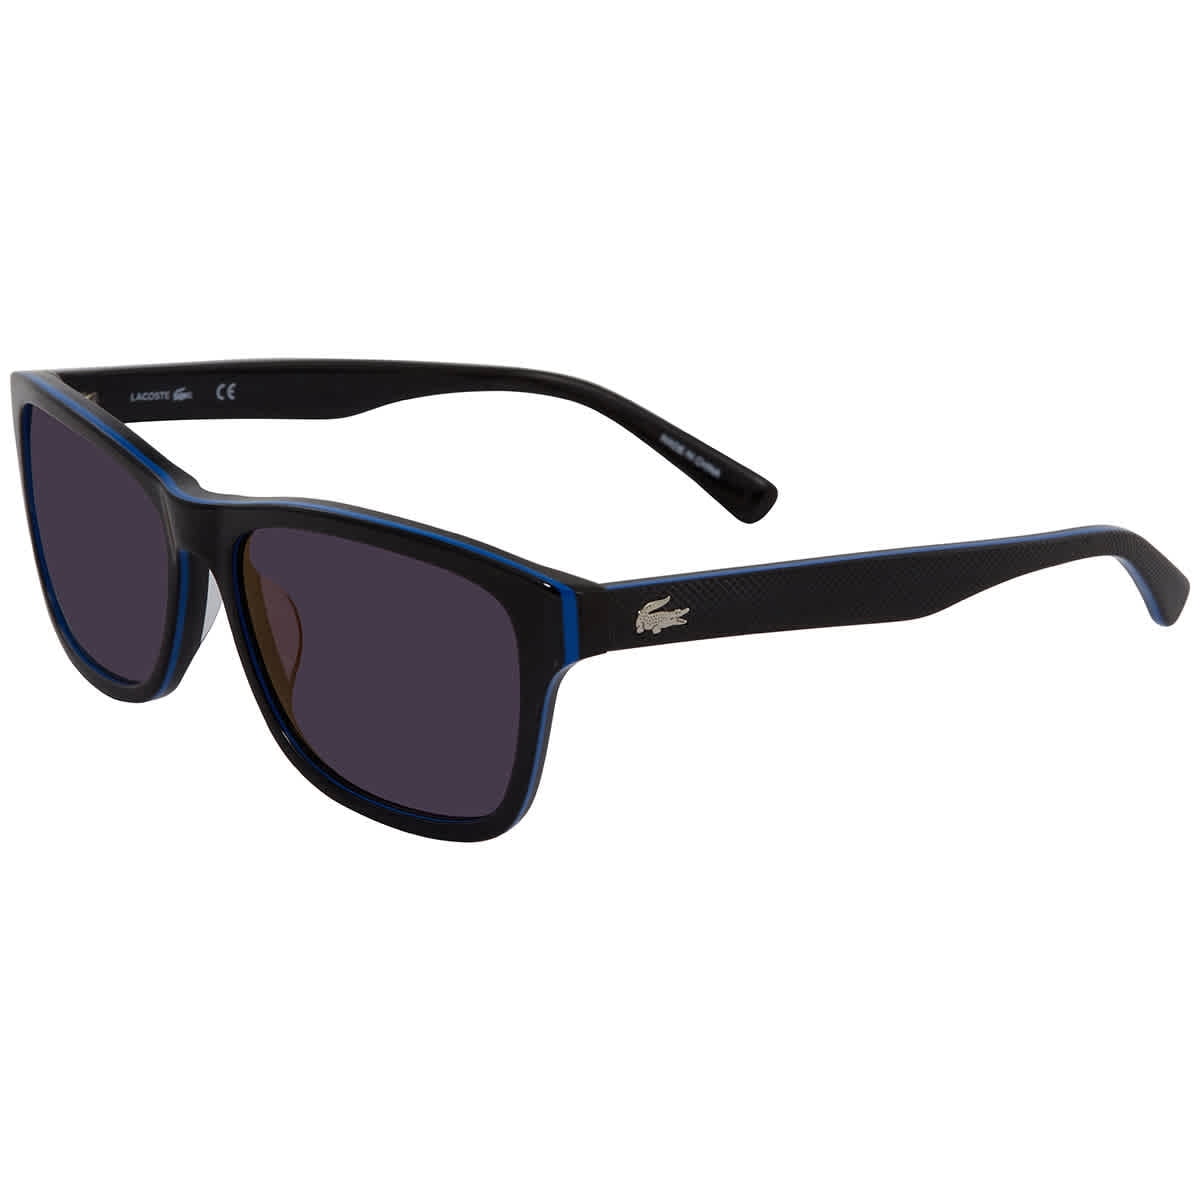 NEW Lacoste Sunglasses L829SND 424 BLUE  54-18-140CASE&CLOTH